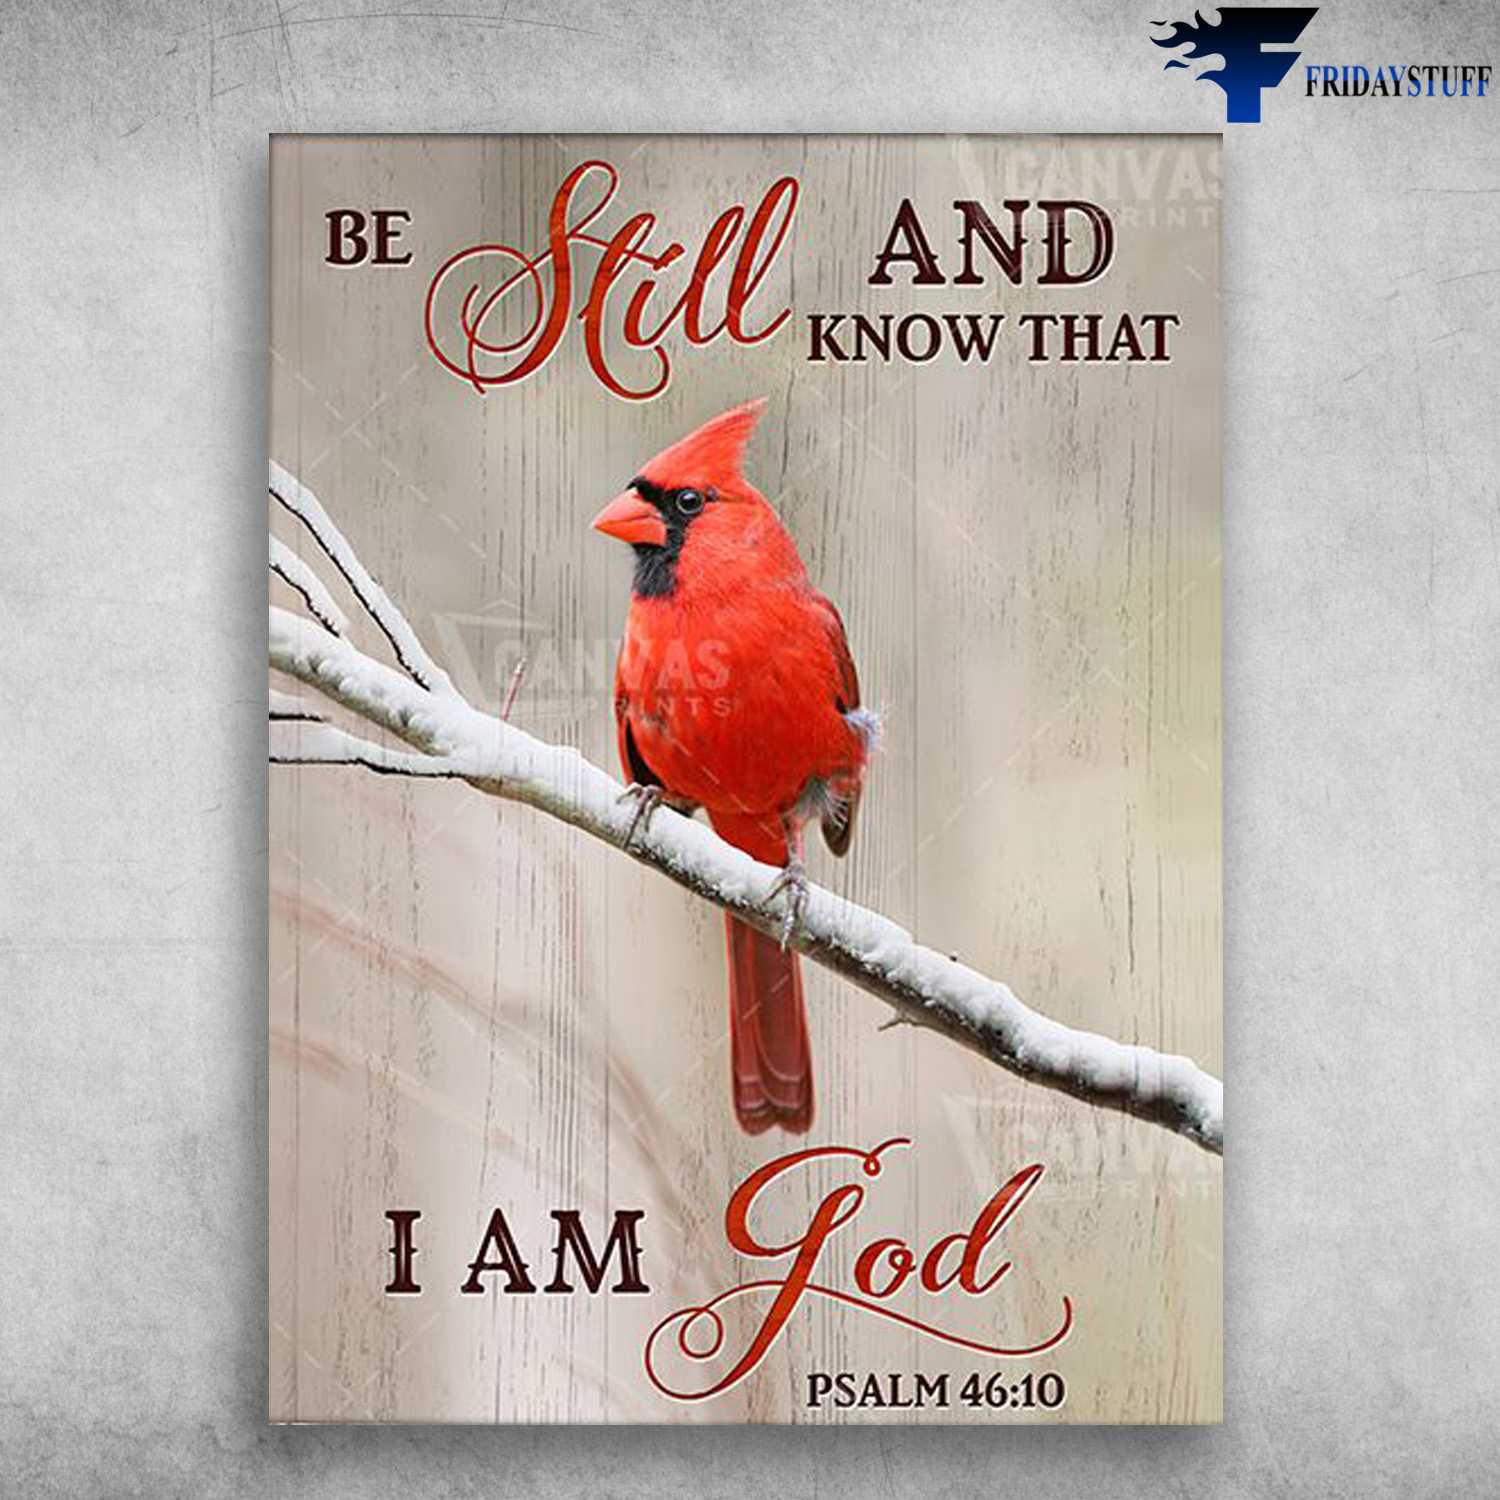 Cardinal Bird, Cardinal Bird Poster, Be Still And Know That, I Am God